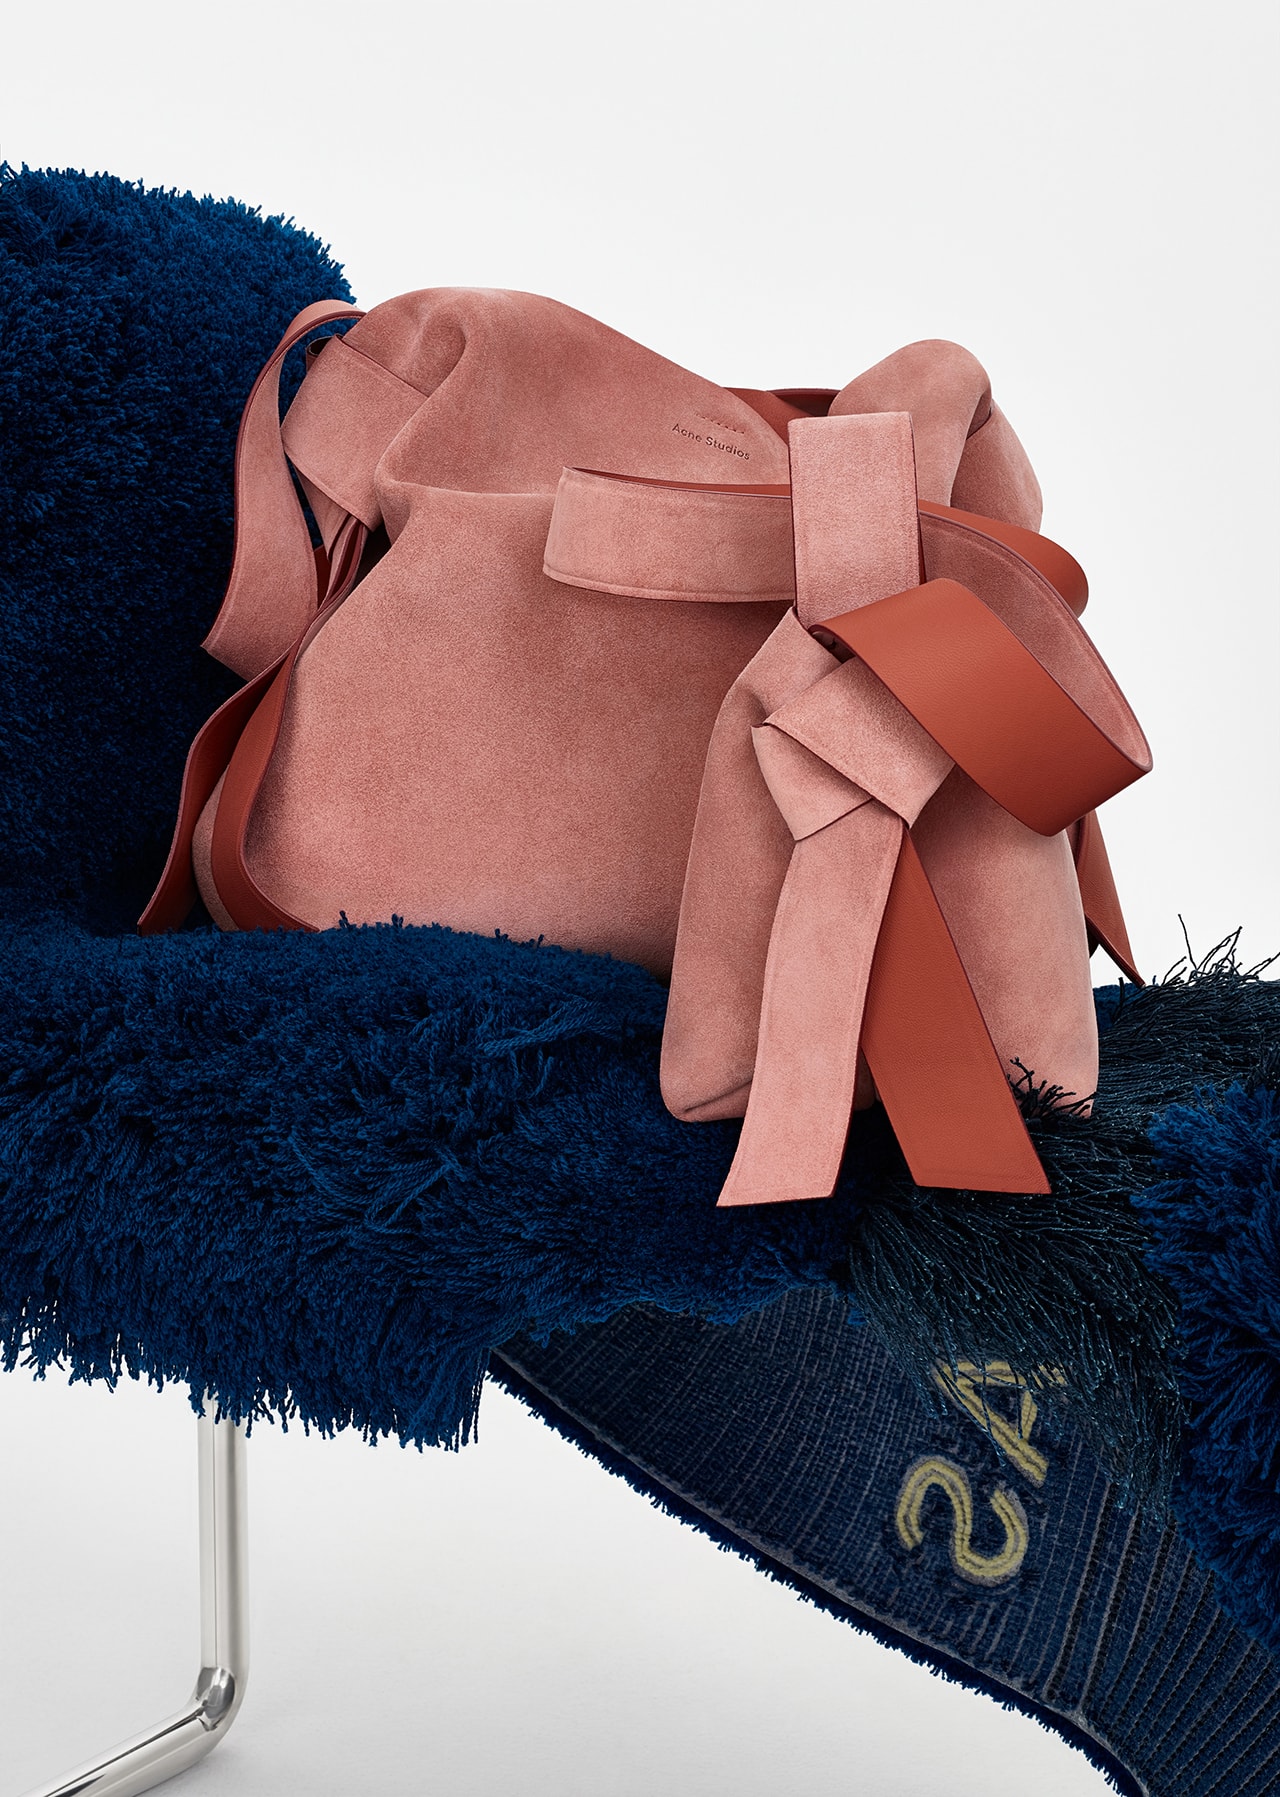 acne studios spring summer 2019 ss19 handbag bag musubi pink